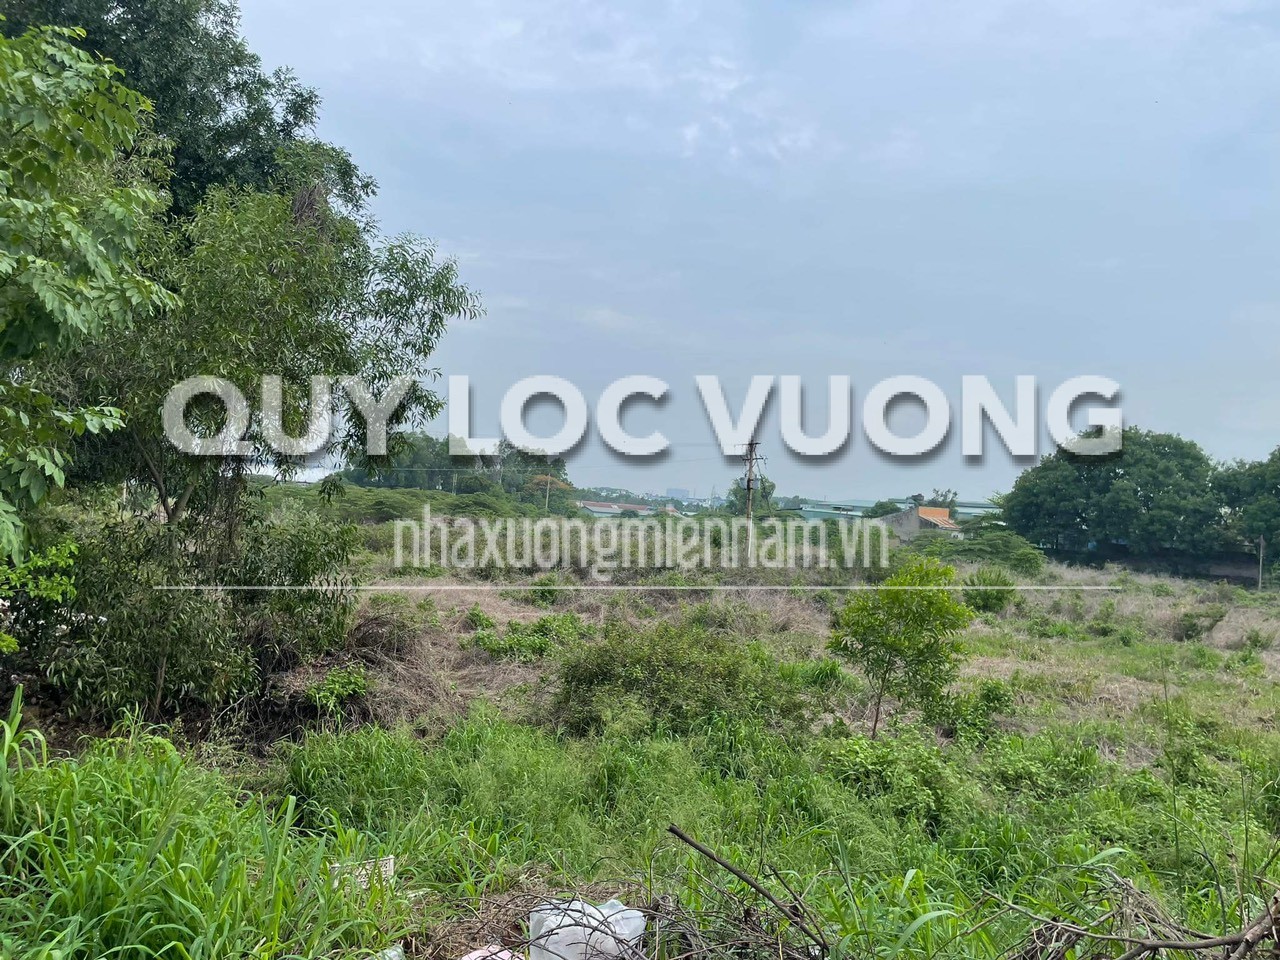 Cho thuê đất 40.000m2 ở Tân Phước Khánh, Tân Uyên - Quý Lộc Vượng - Công Ty TNHH MTV Quý Lộc Vượng